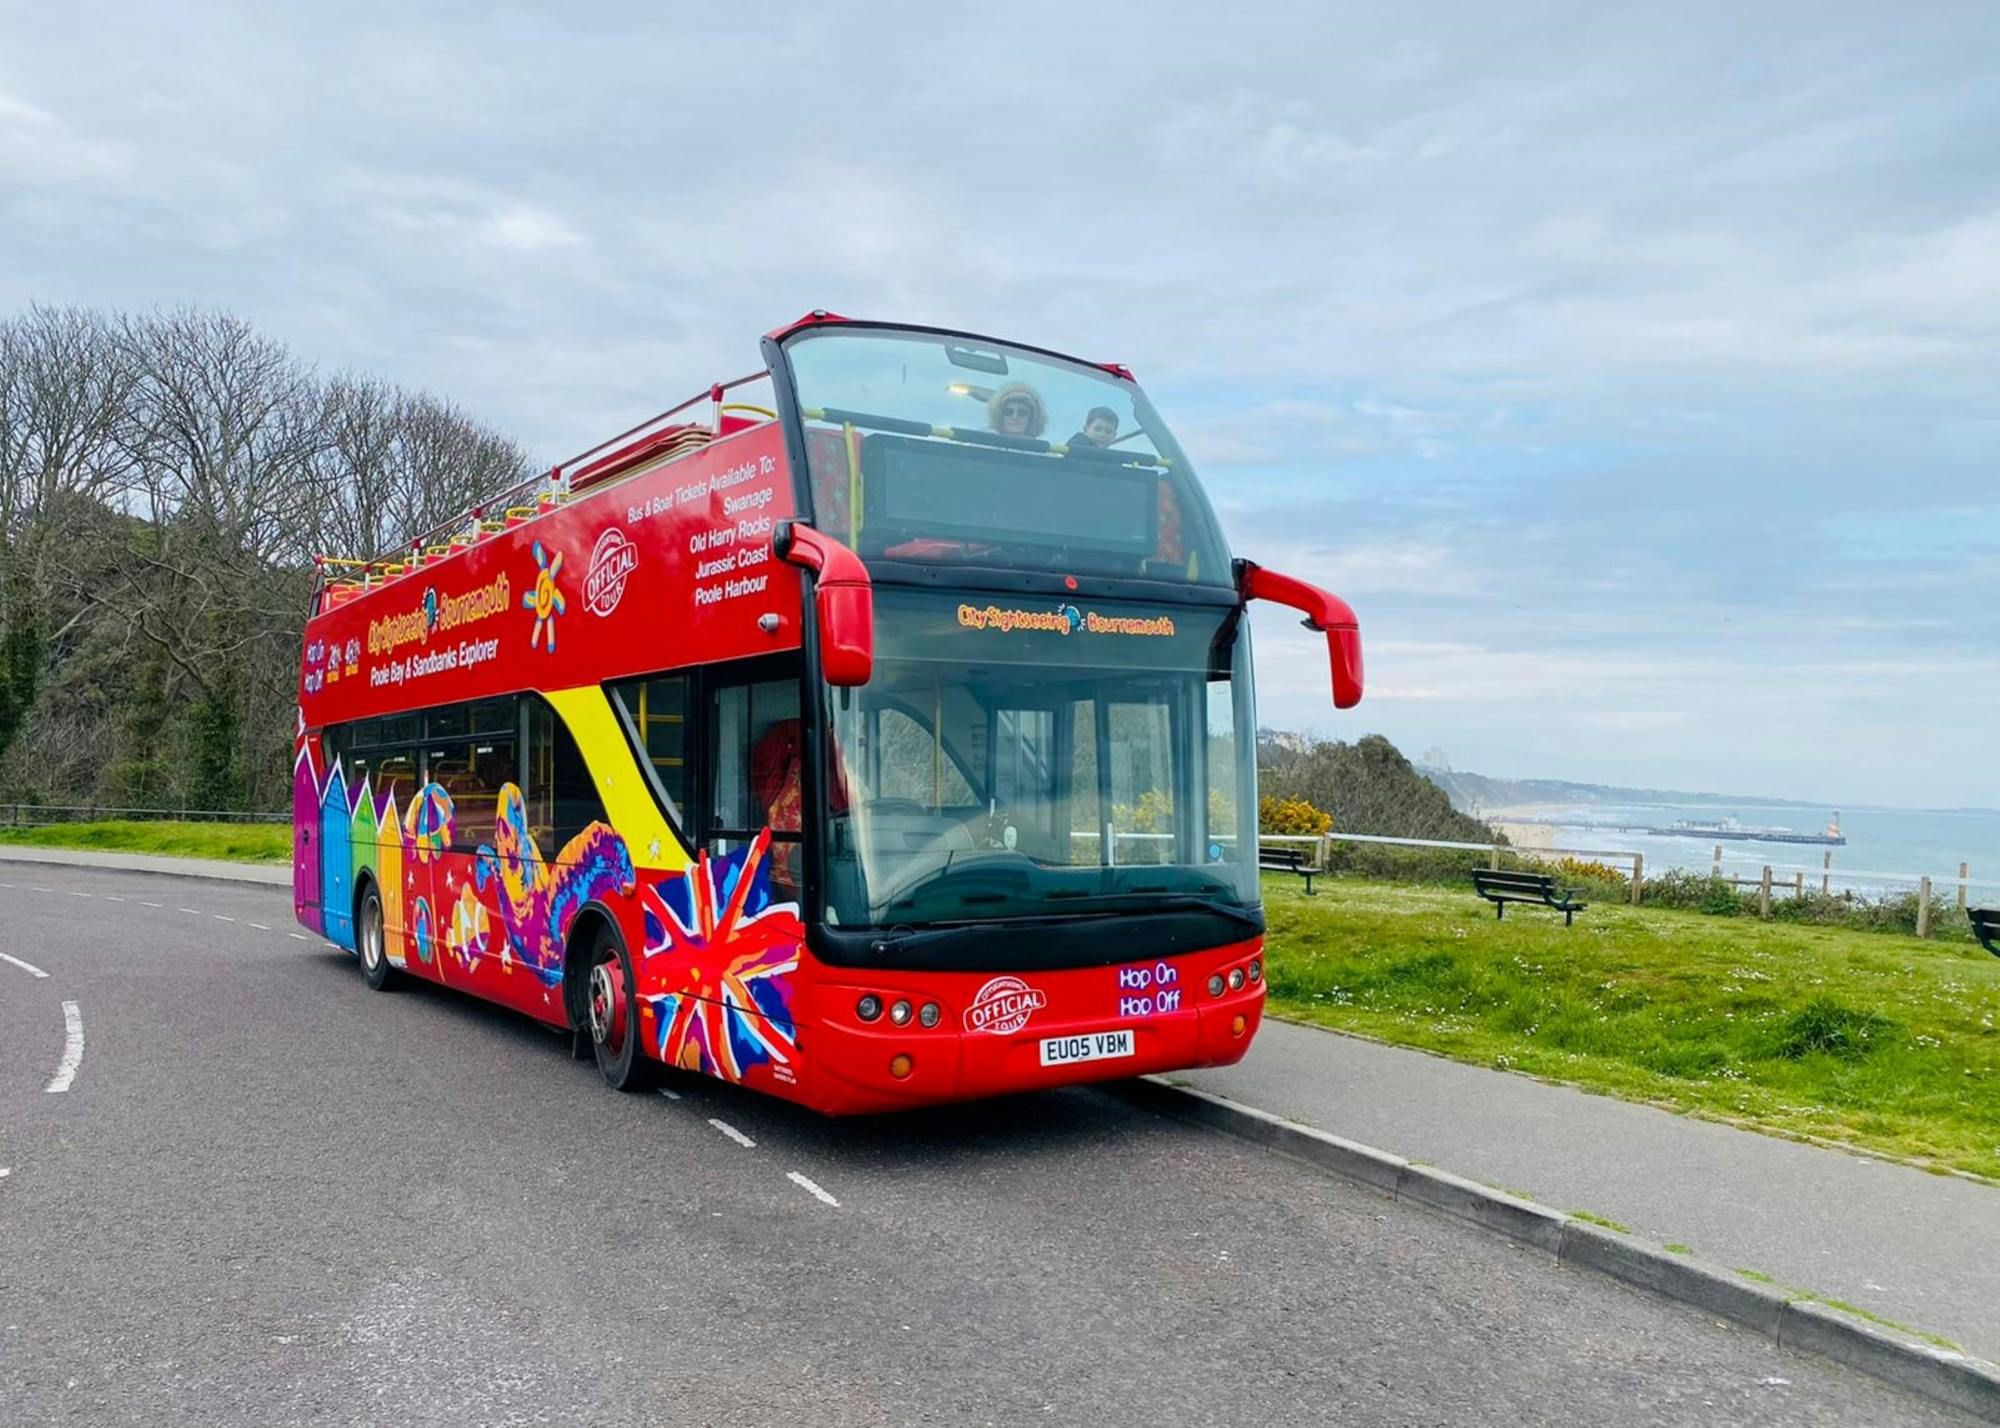 Tour en autobús turístico City Sightseeing por Bournemouth